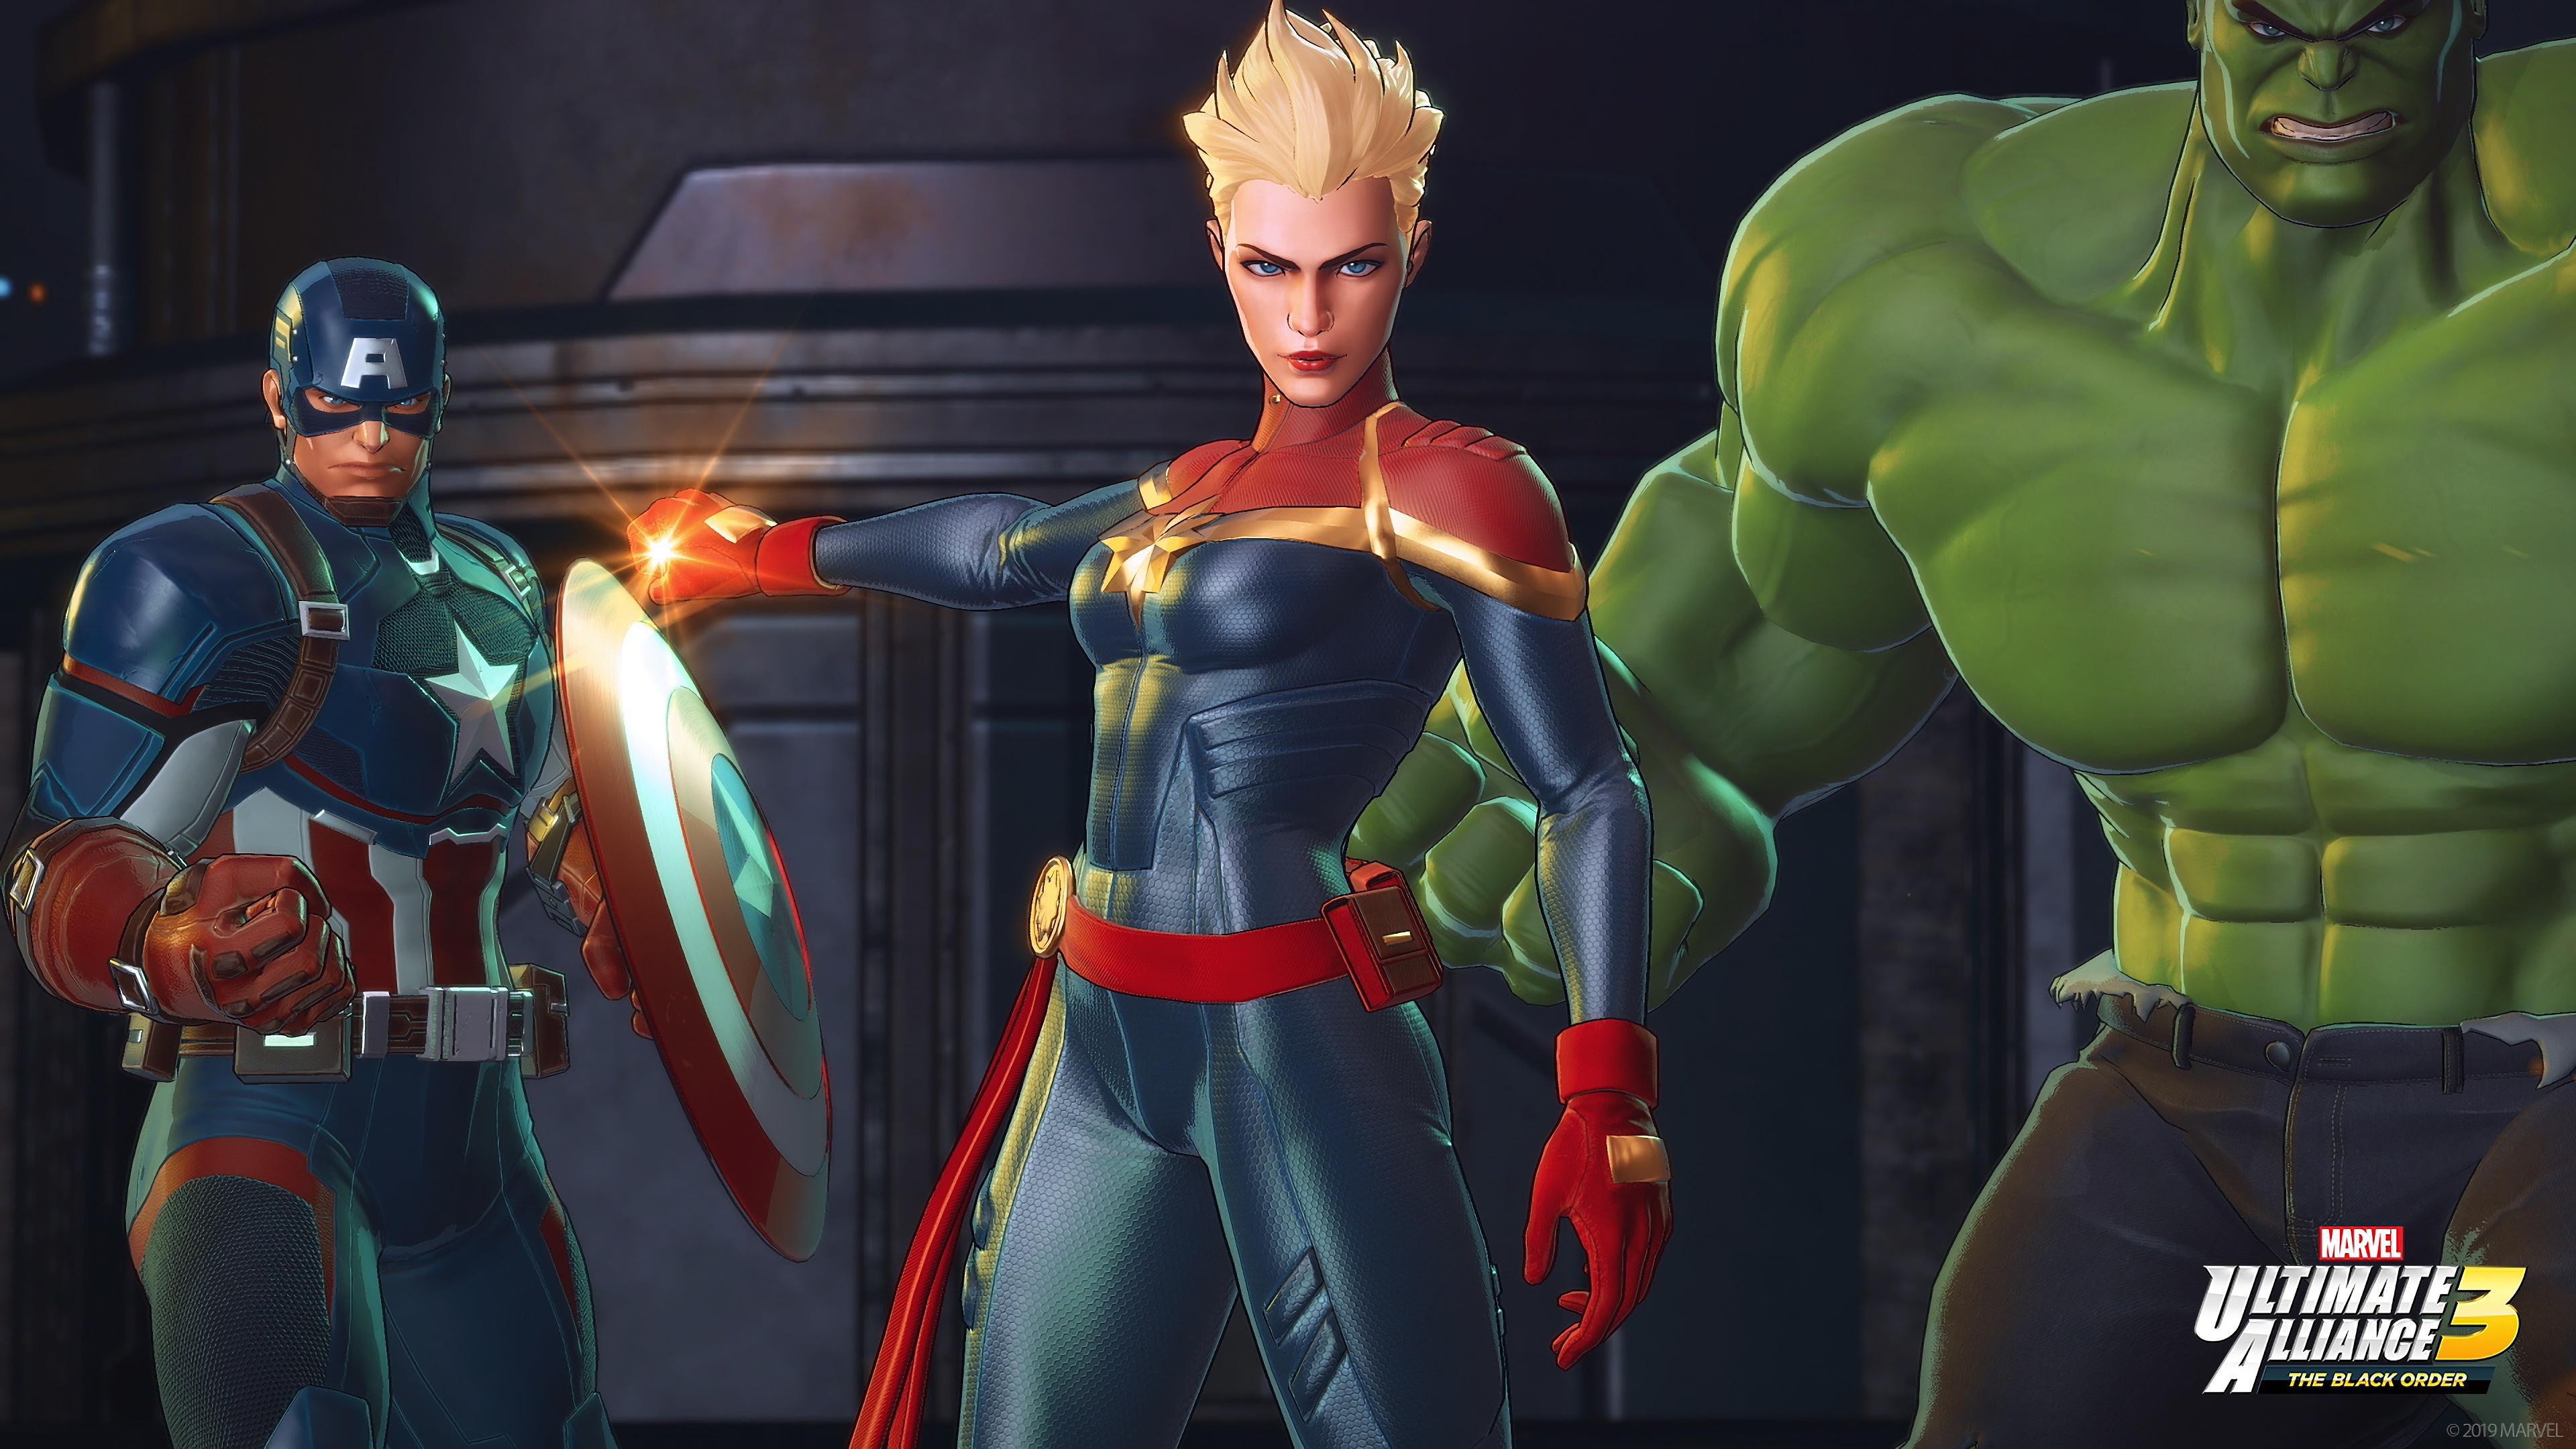 Captain America Captain Marvel Hulk Marvel Ultimate Alliance 3 The Black Order 3840x2160